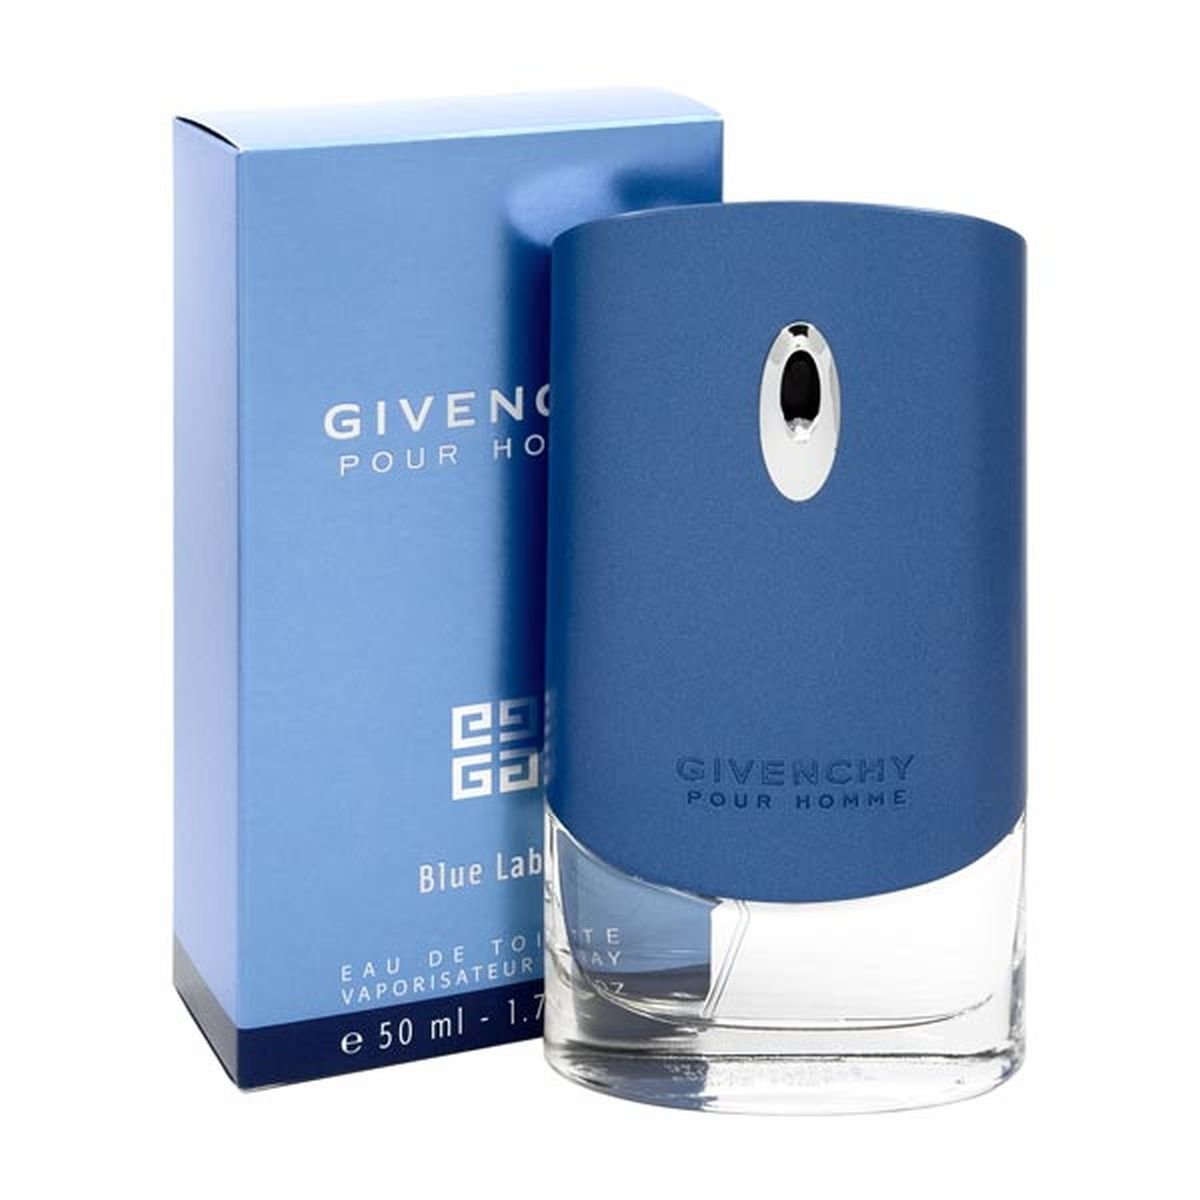 Blu 50. Givenchy Blue Label. Дживанши мужские Блю 50мл. Givenchy Blue Label 50. Givenchy Blue Label (мужские) 50ml.